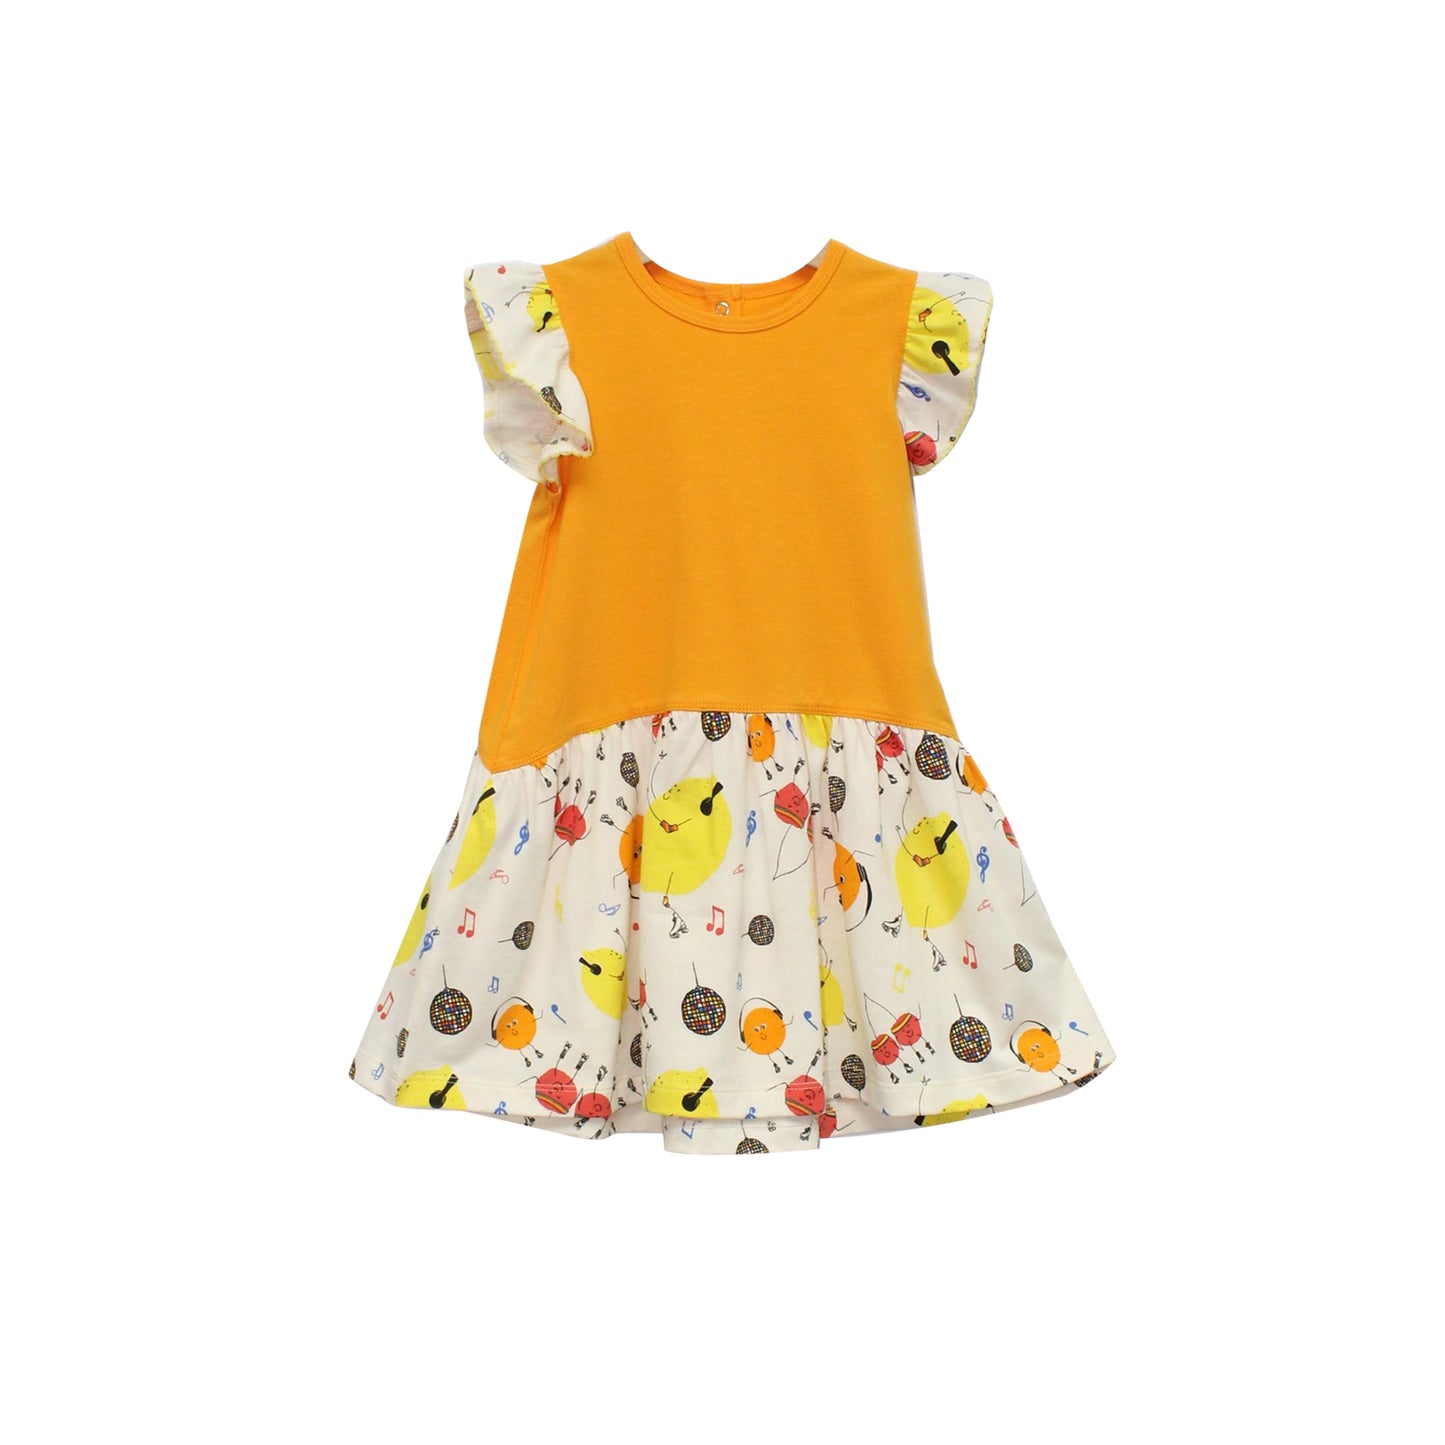 童裝BB衫有機棉 - 黃色拼水果派對印花連身裙